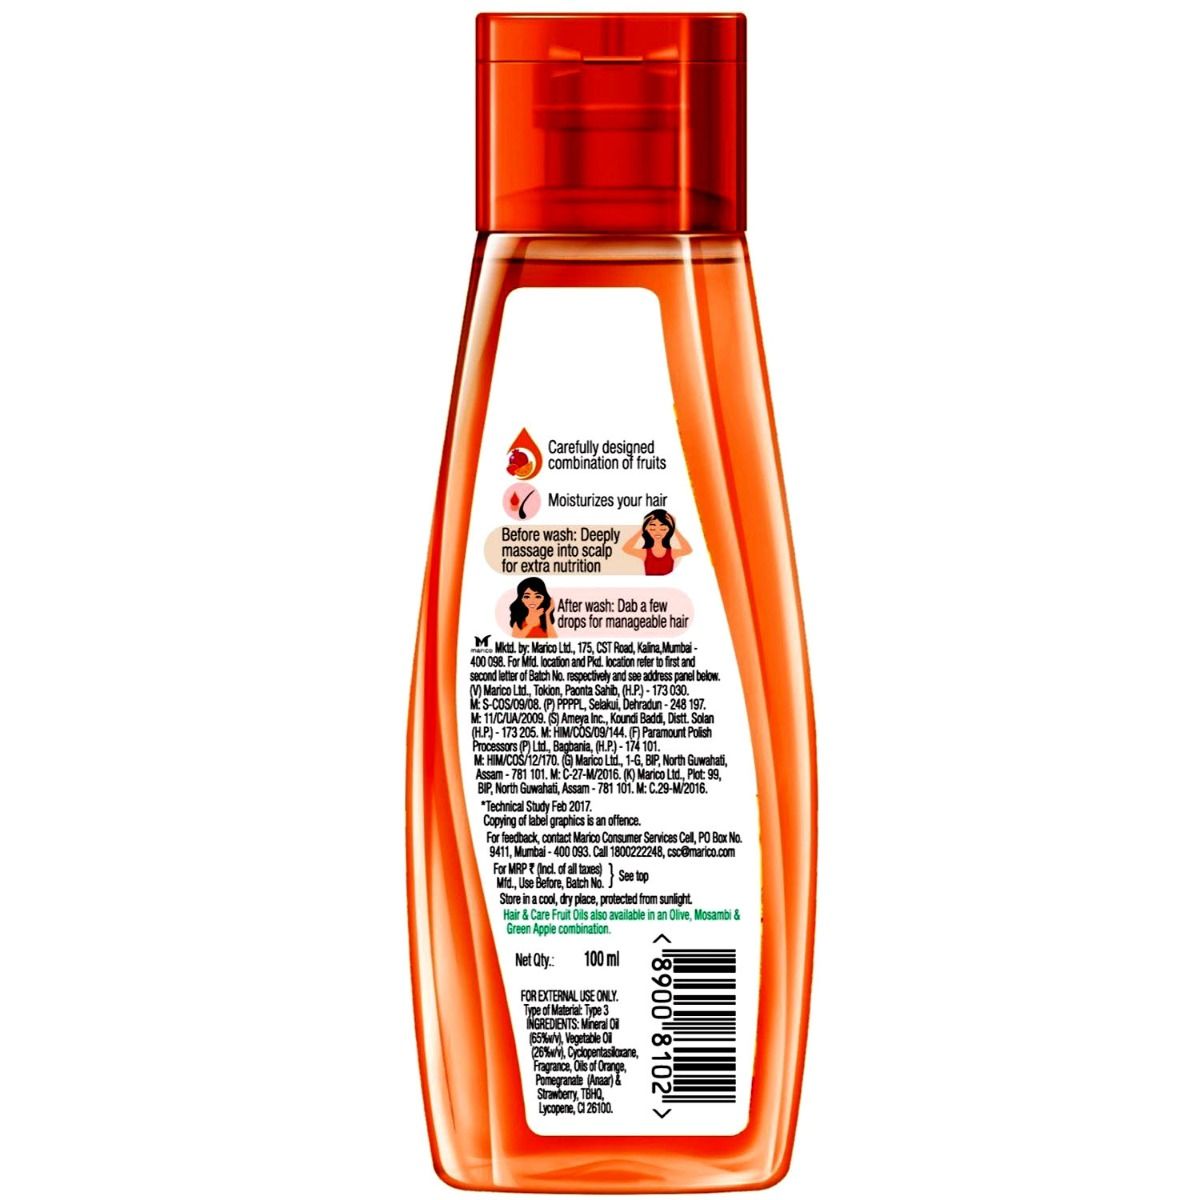 Hair & Care Moisturising Fruit Oils Non Sticky Hair Oil, 100 ml, Pack of 1 